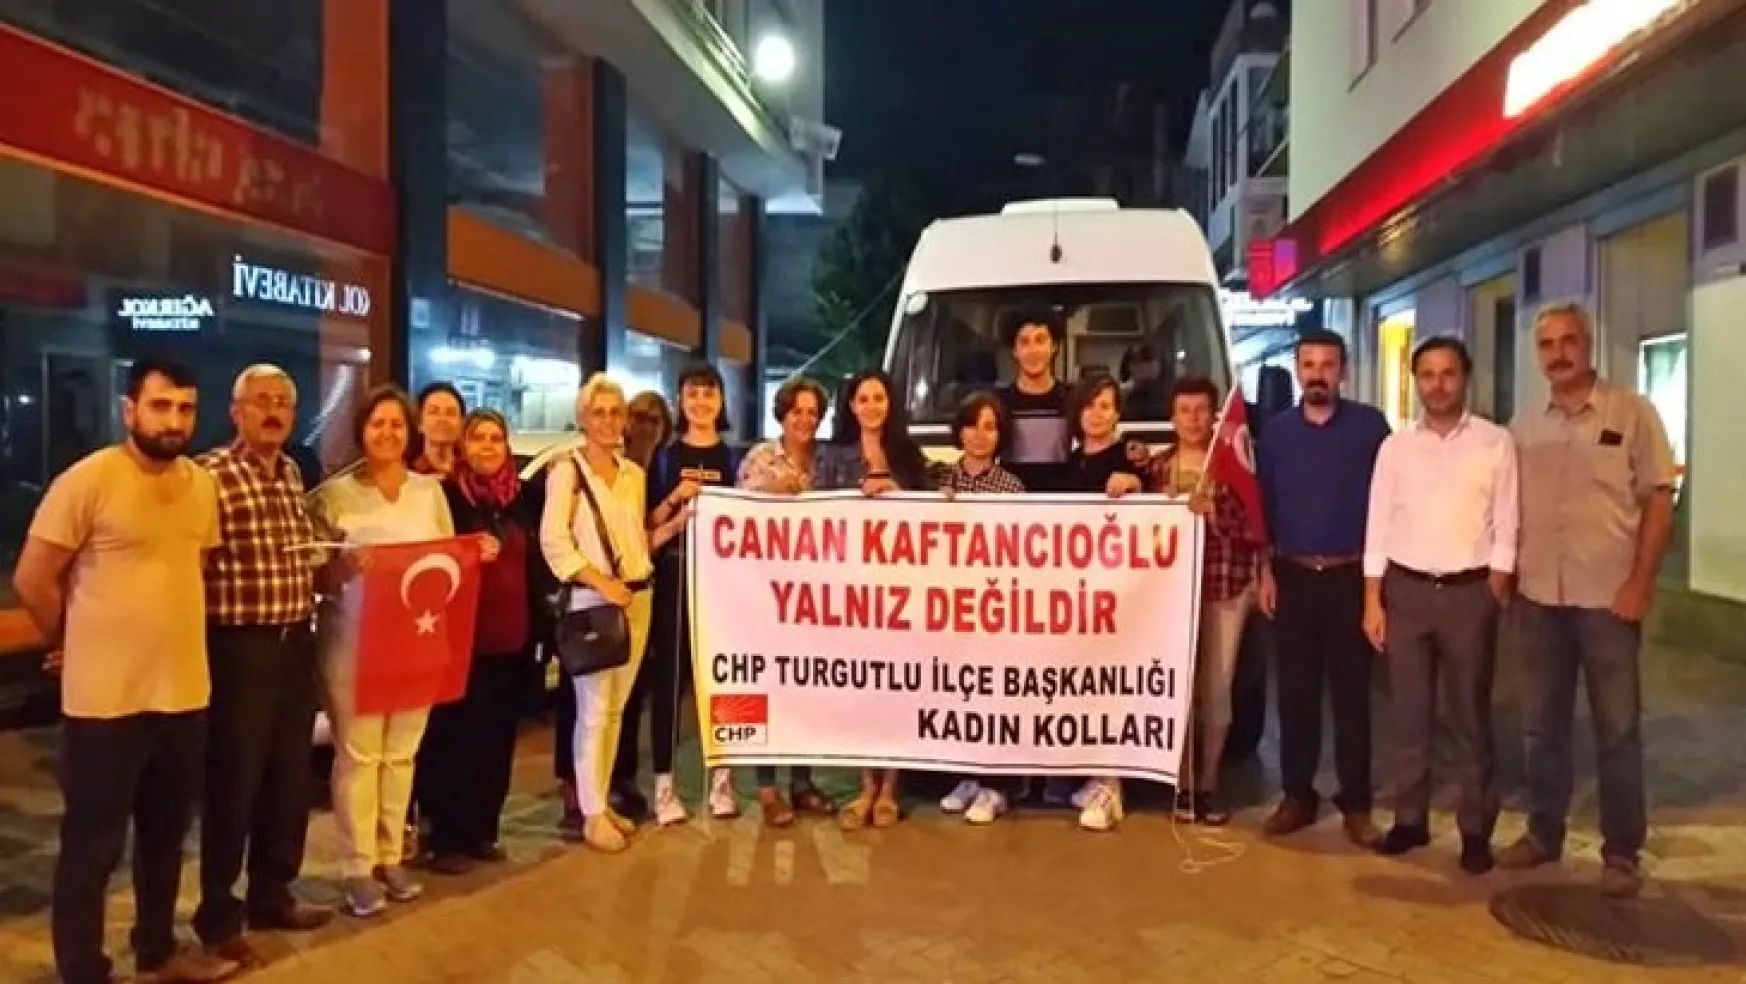 Canan Kaftancıoğlu'na destek için İstanbul'a gittiler